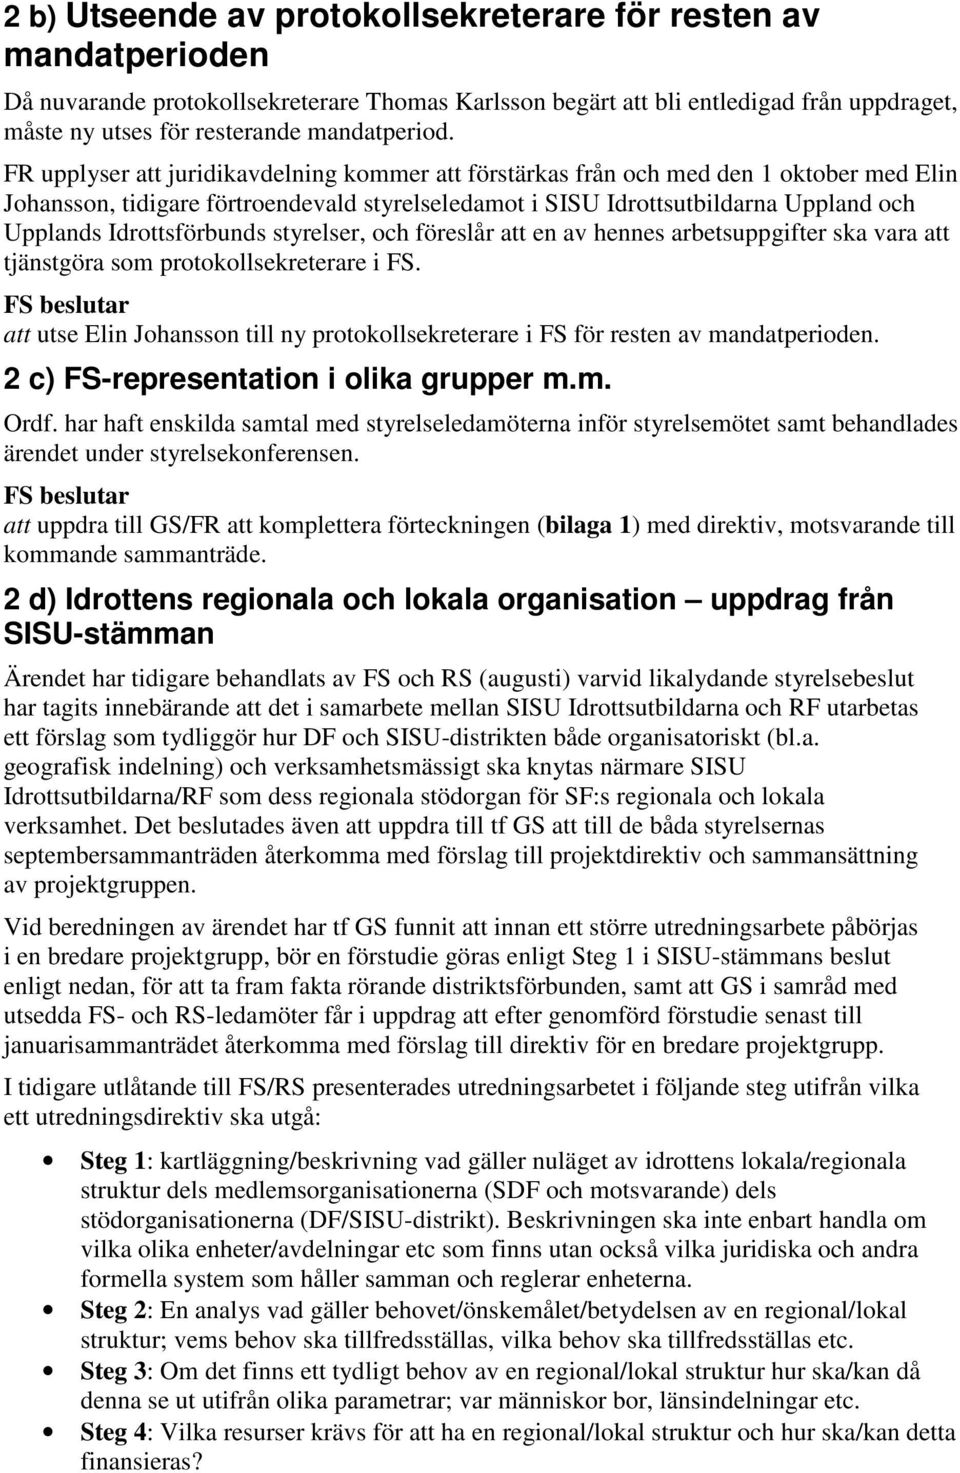 FR upplyser att juridikavdelning kommer att förstärkas från och med den 1 oktober med Elin Johansson, tidigare förtroendevald styrelseledamot i SISU Idrottsutbildarna Uppland och Upplands